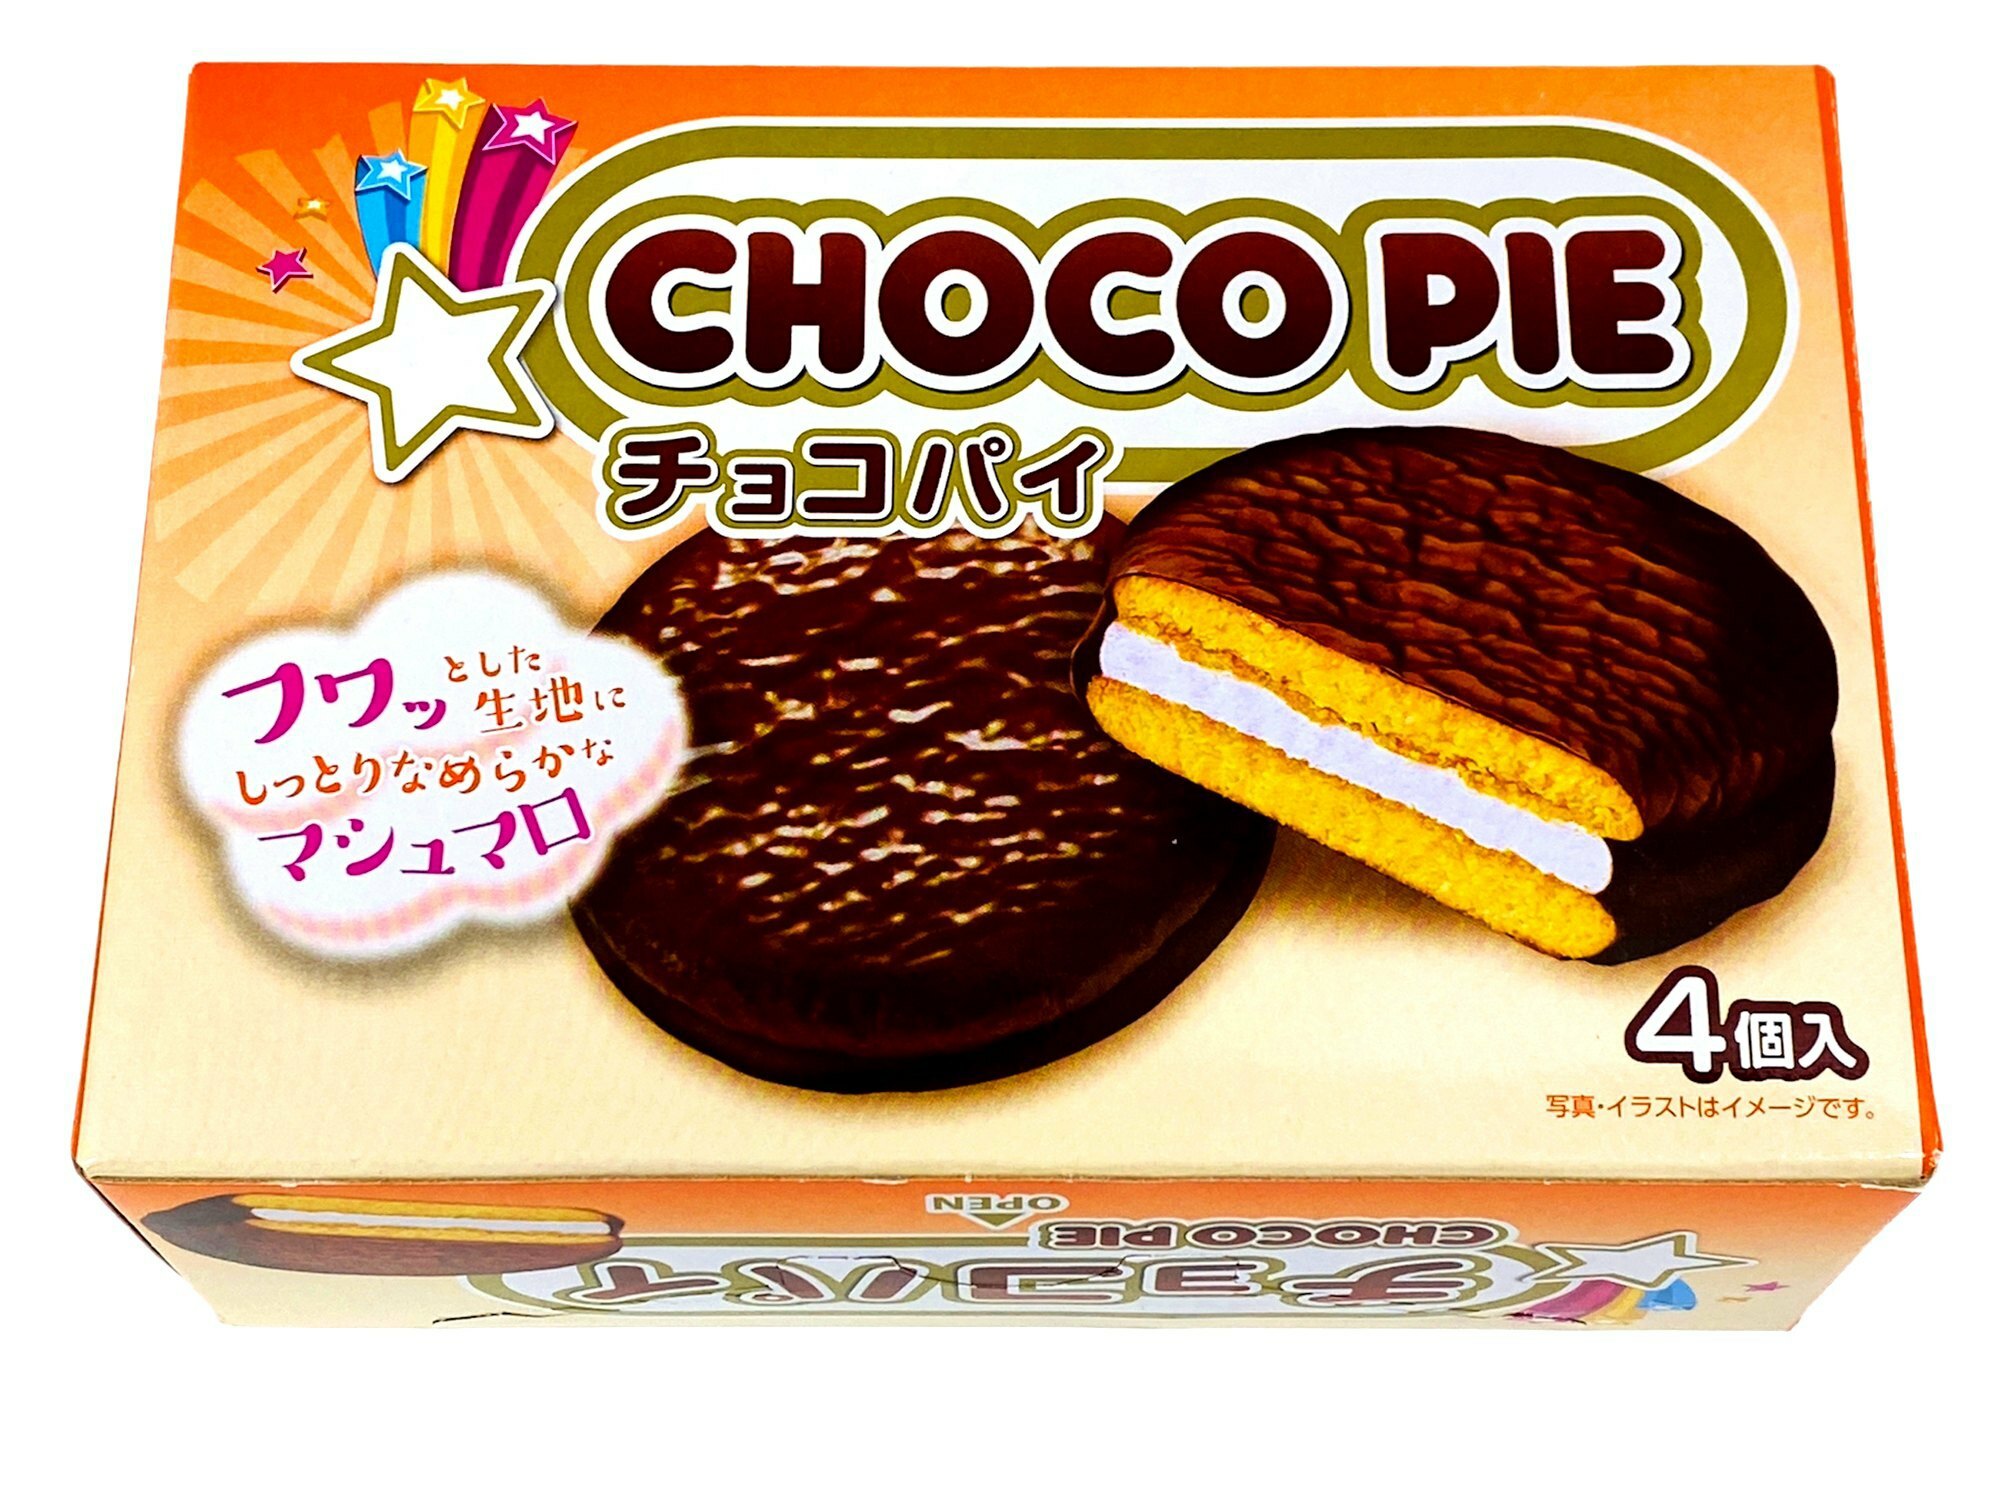 KOREA Choco Pie